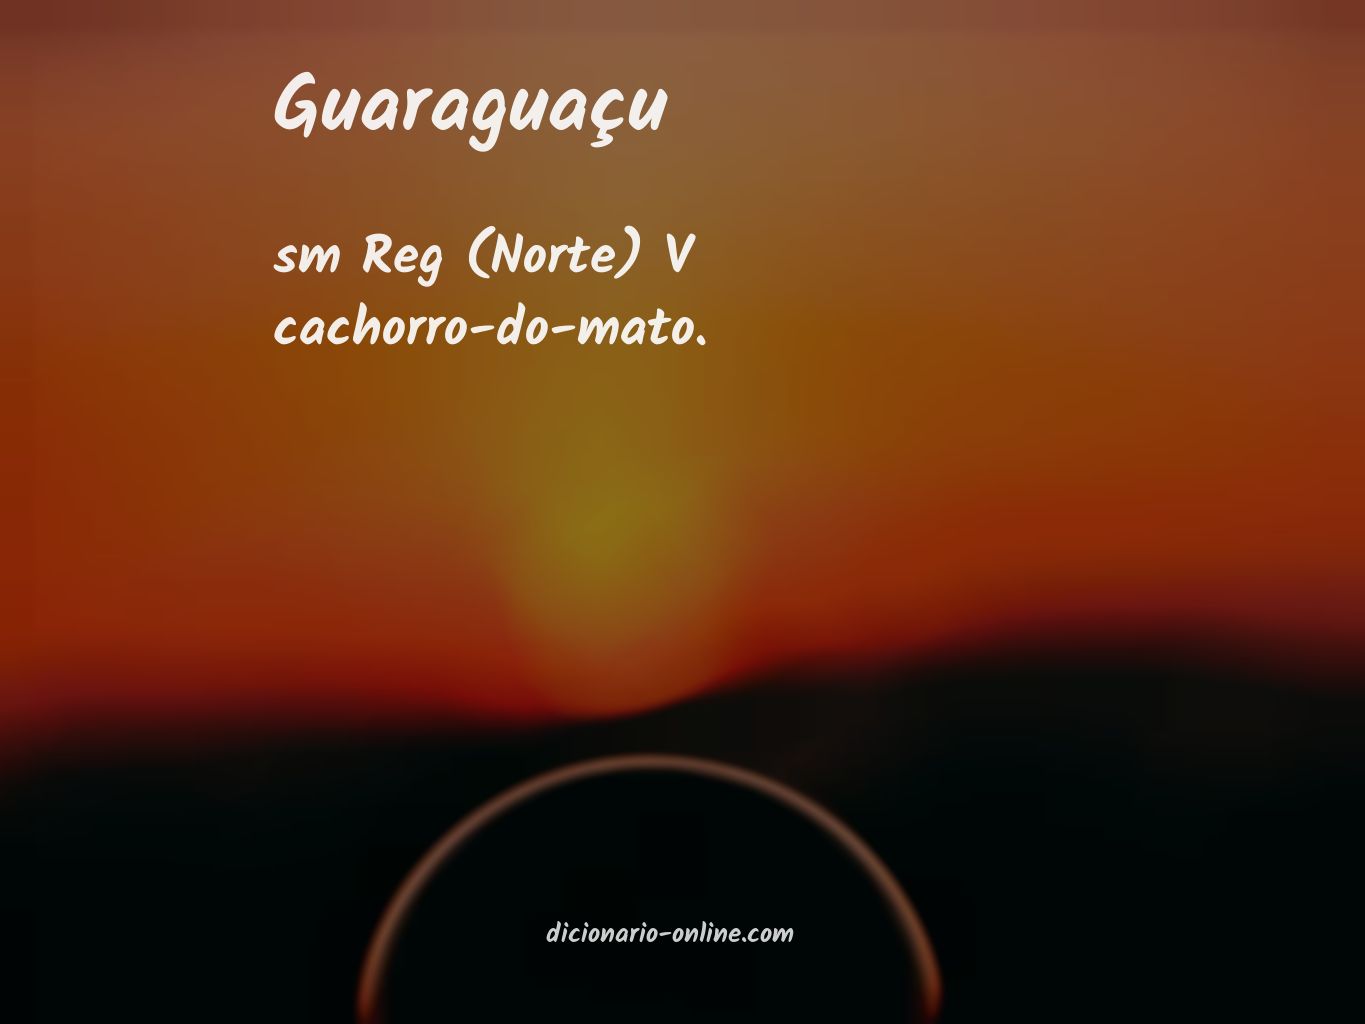 Significado de guaraguaçu